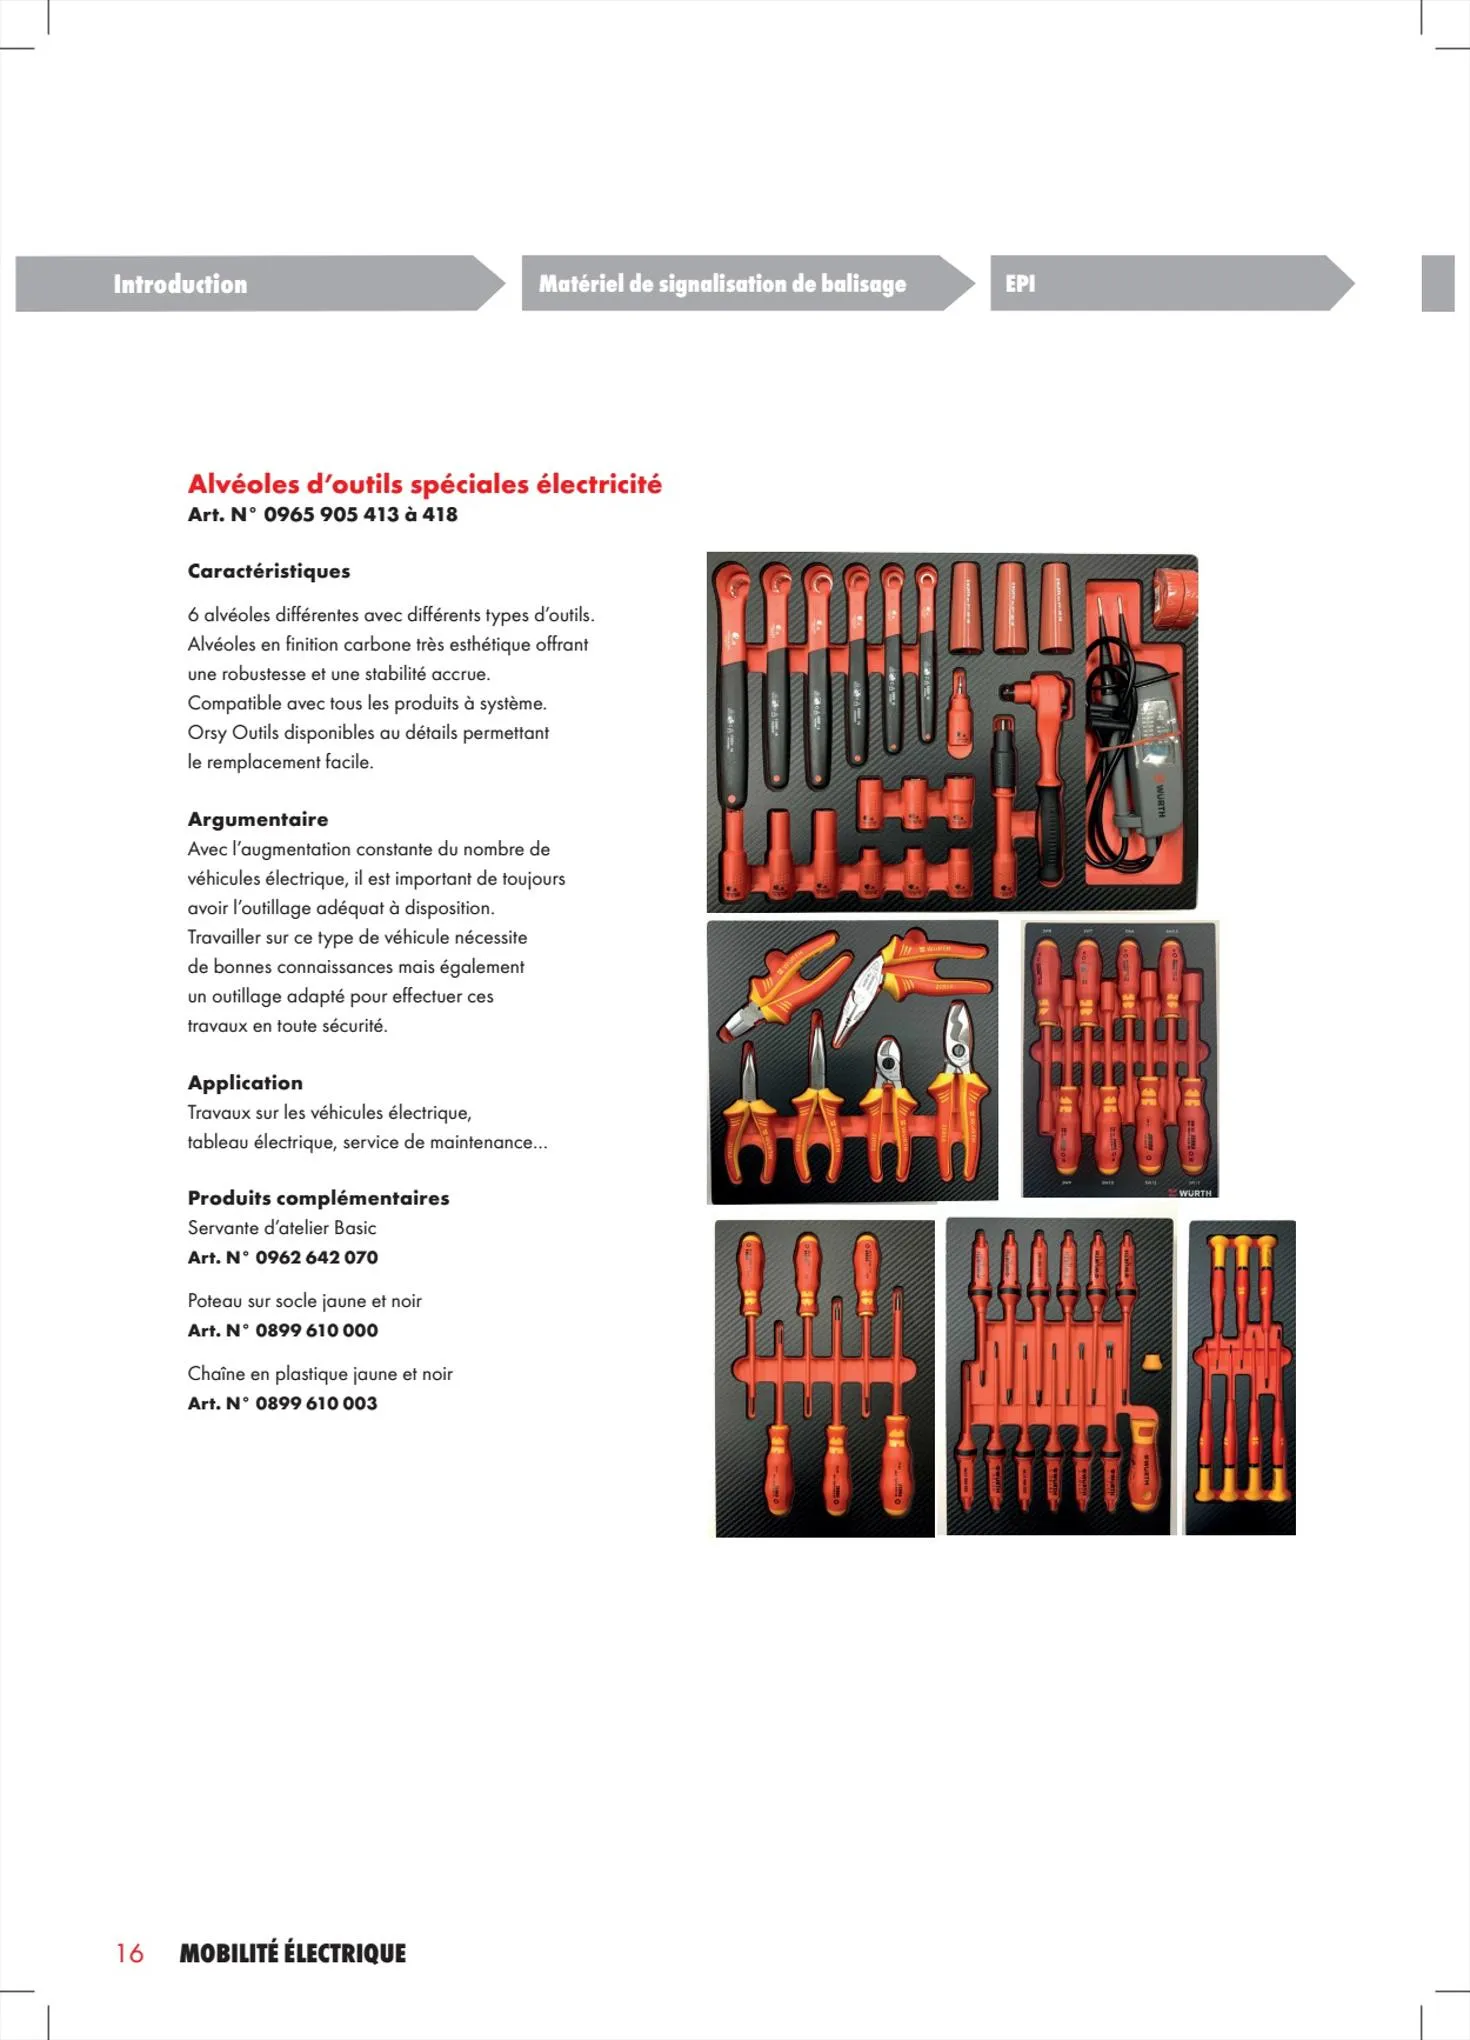 Catalogue Würth Cataloguemobilité électrique, page 00016